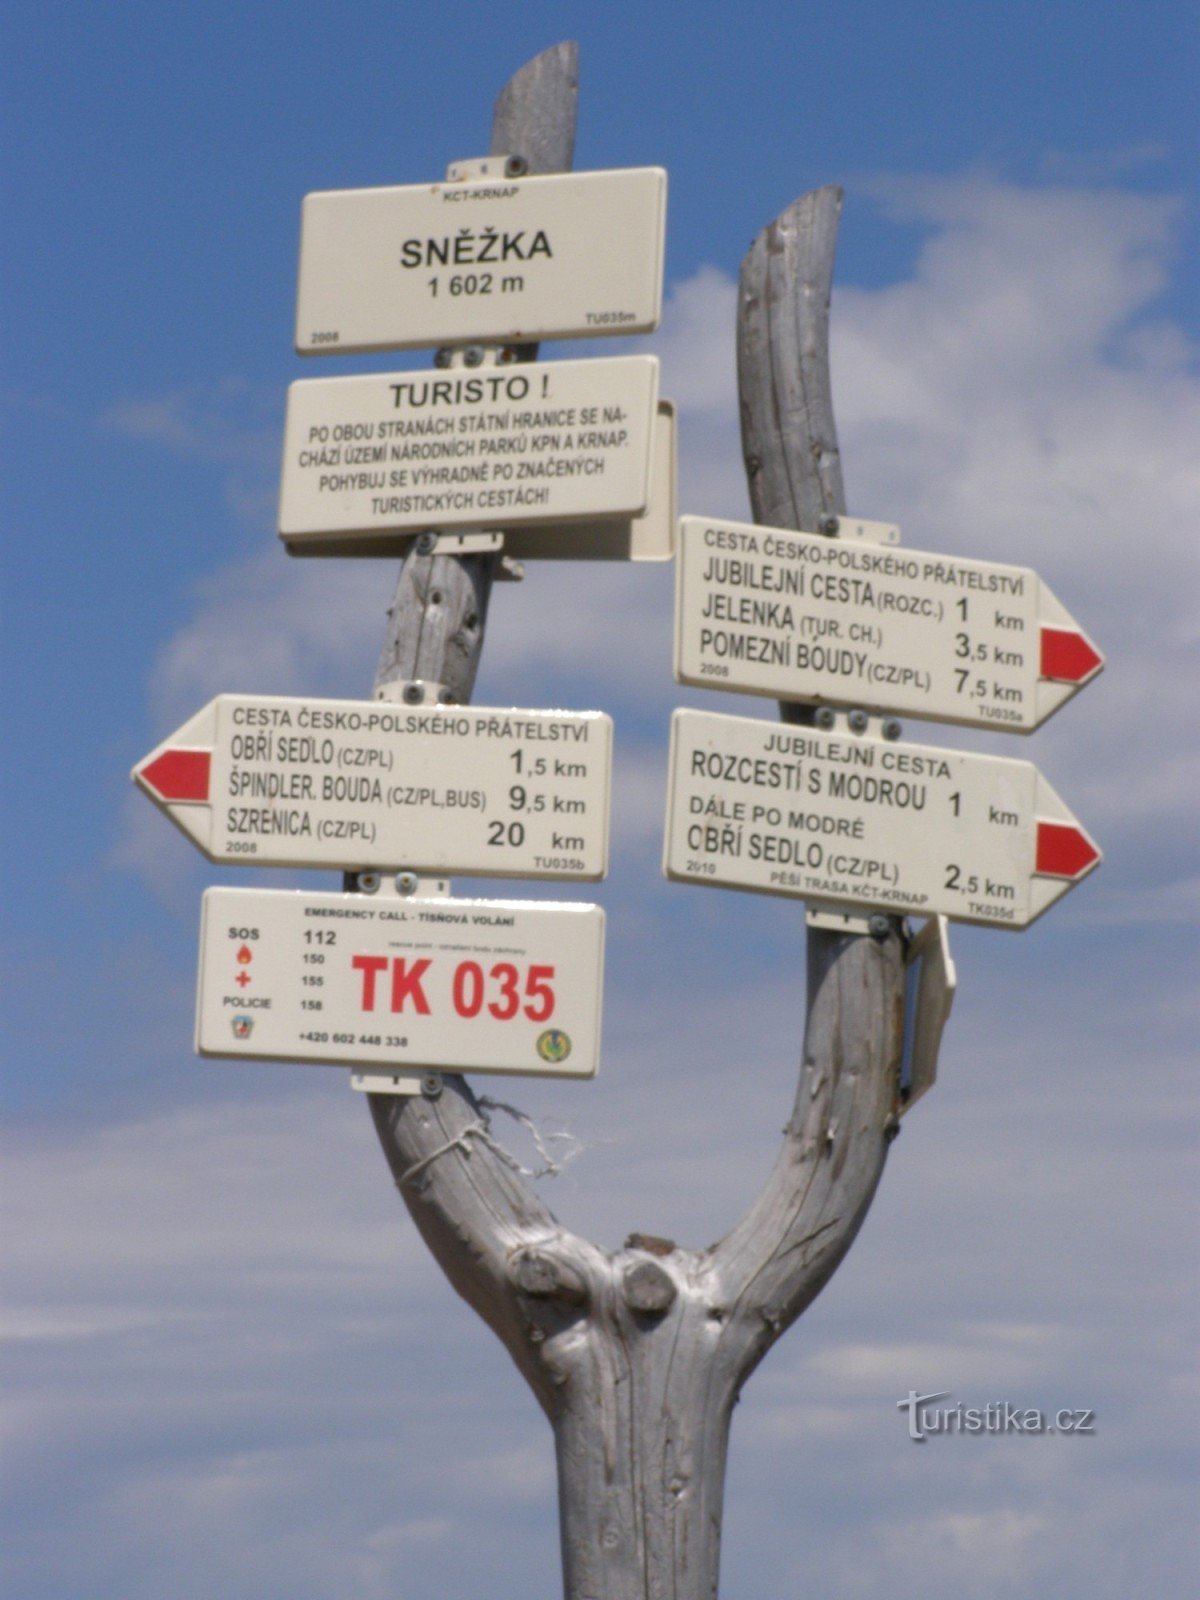 ngã tư du lịch trên Sněžka